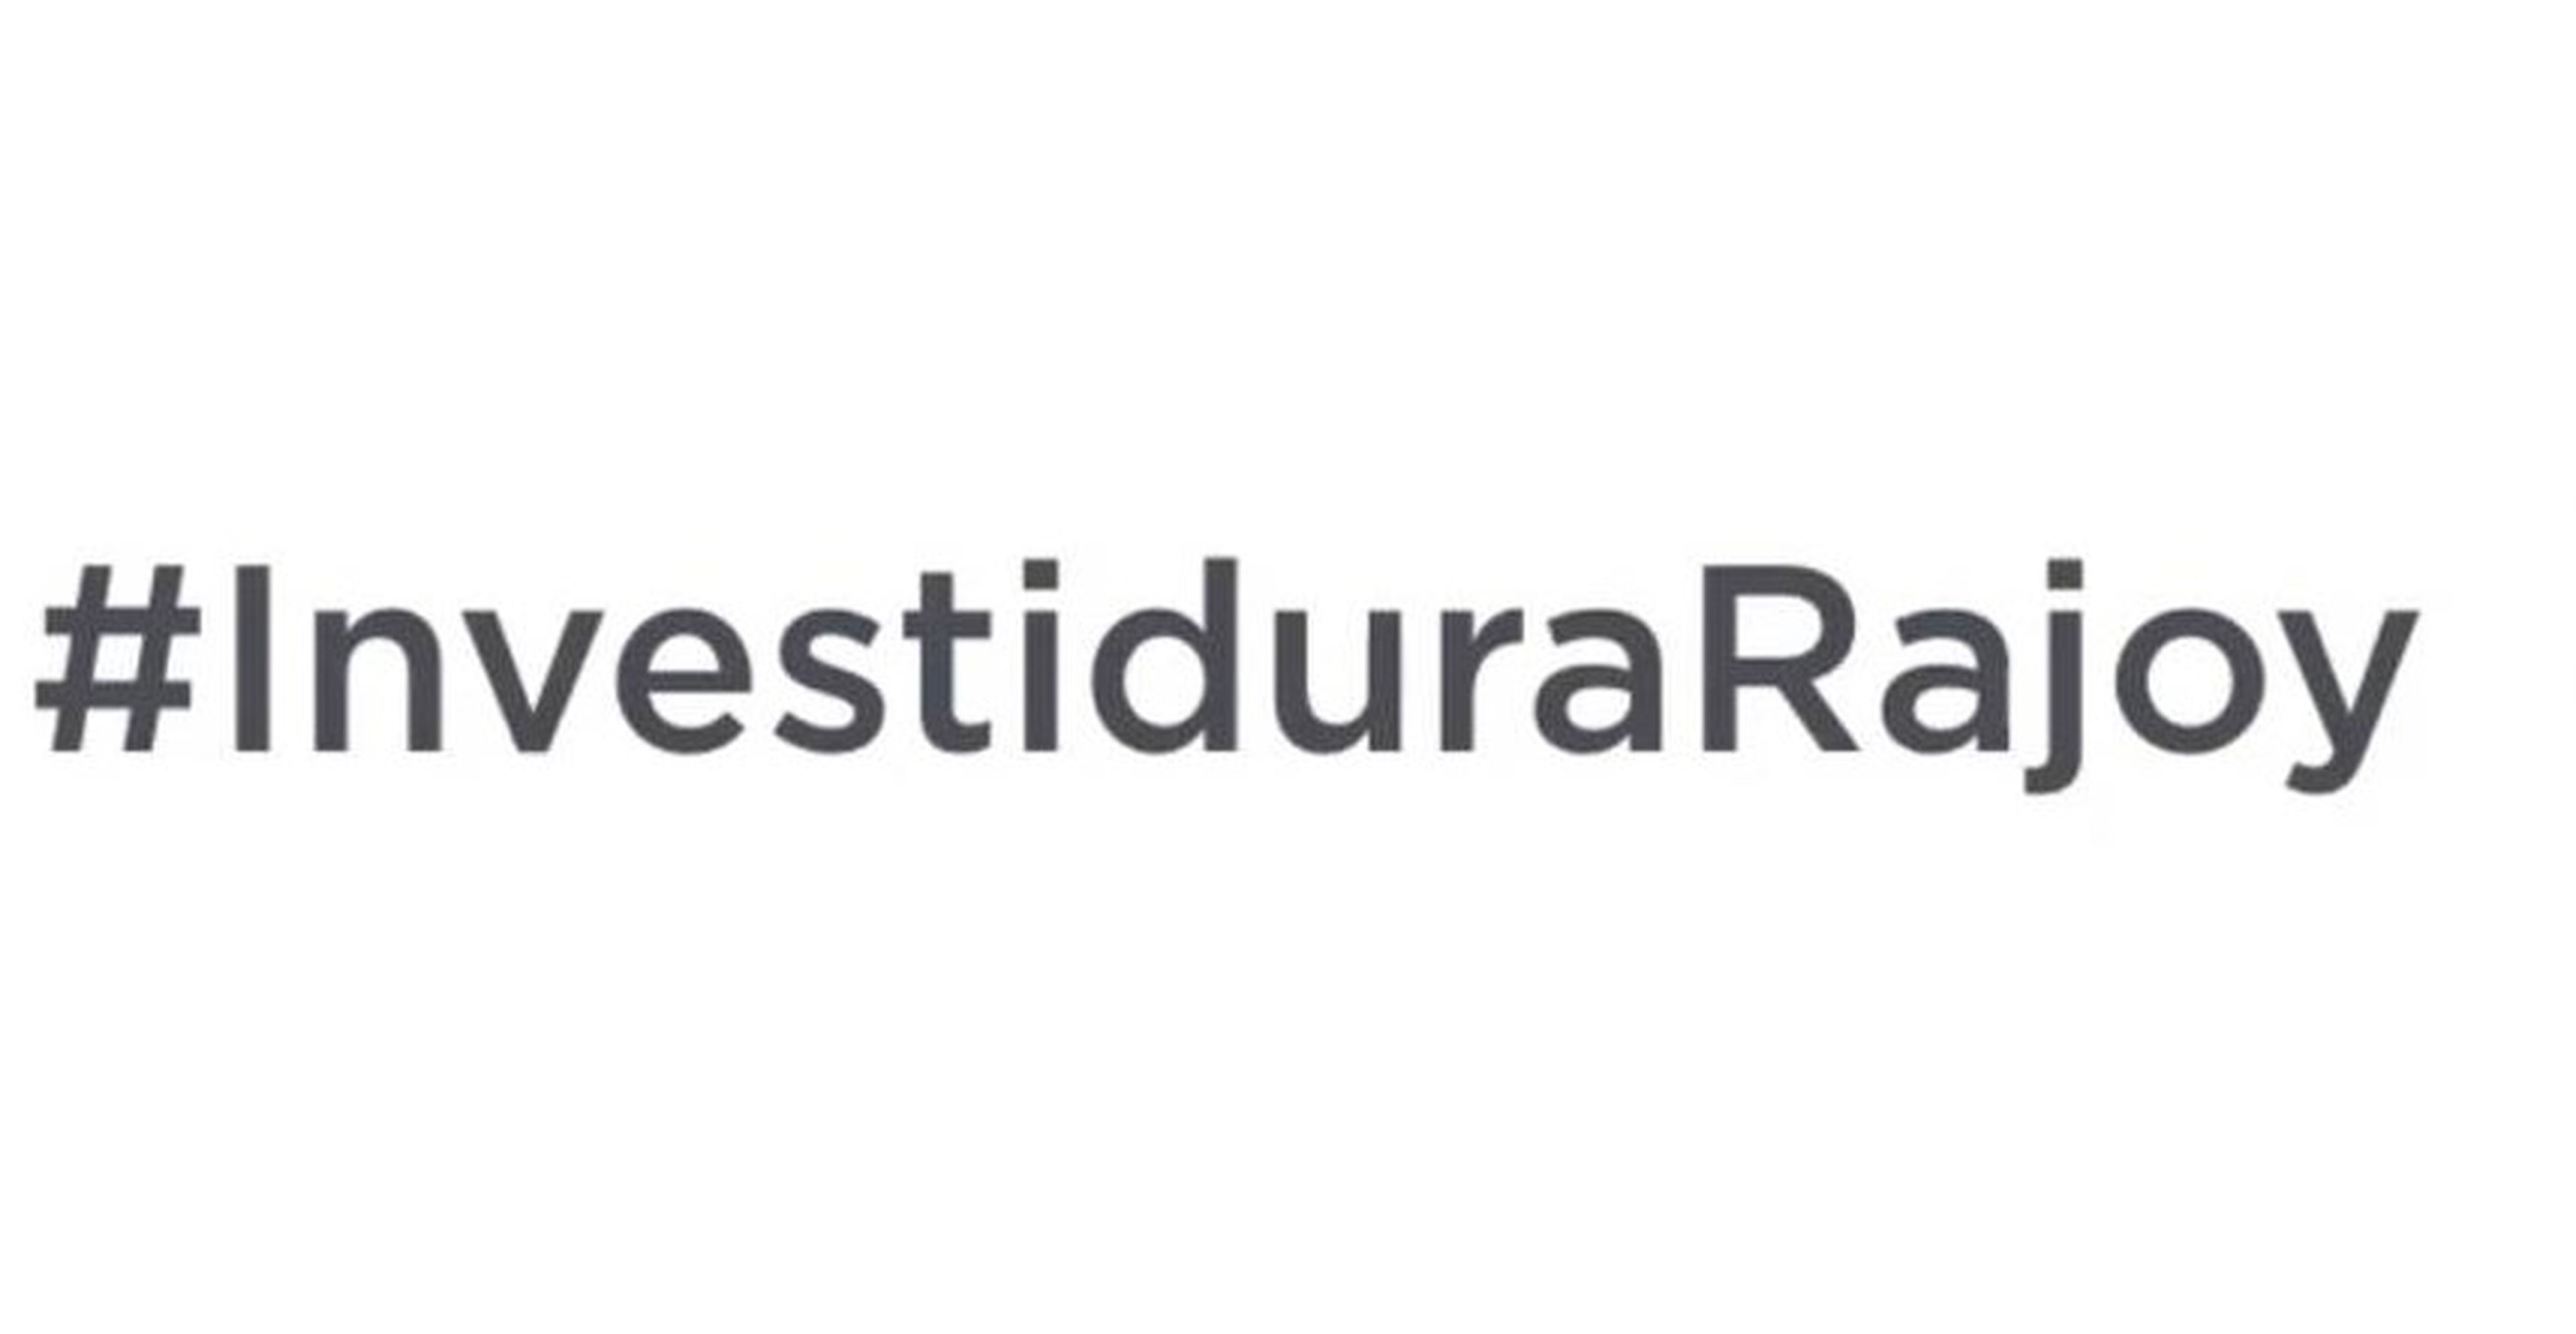 Sesión de investidura: Twitter activa un ‘emoji’ de Rajoy